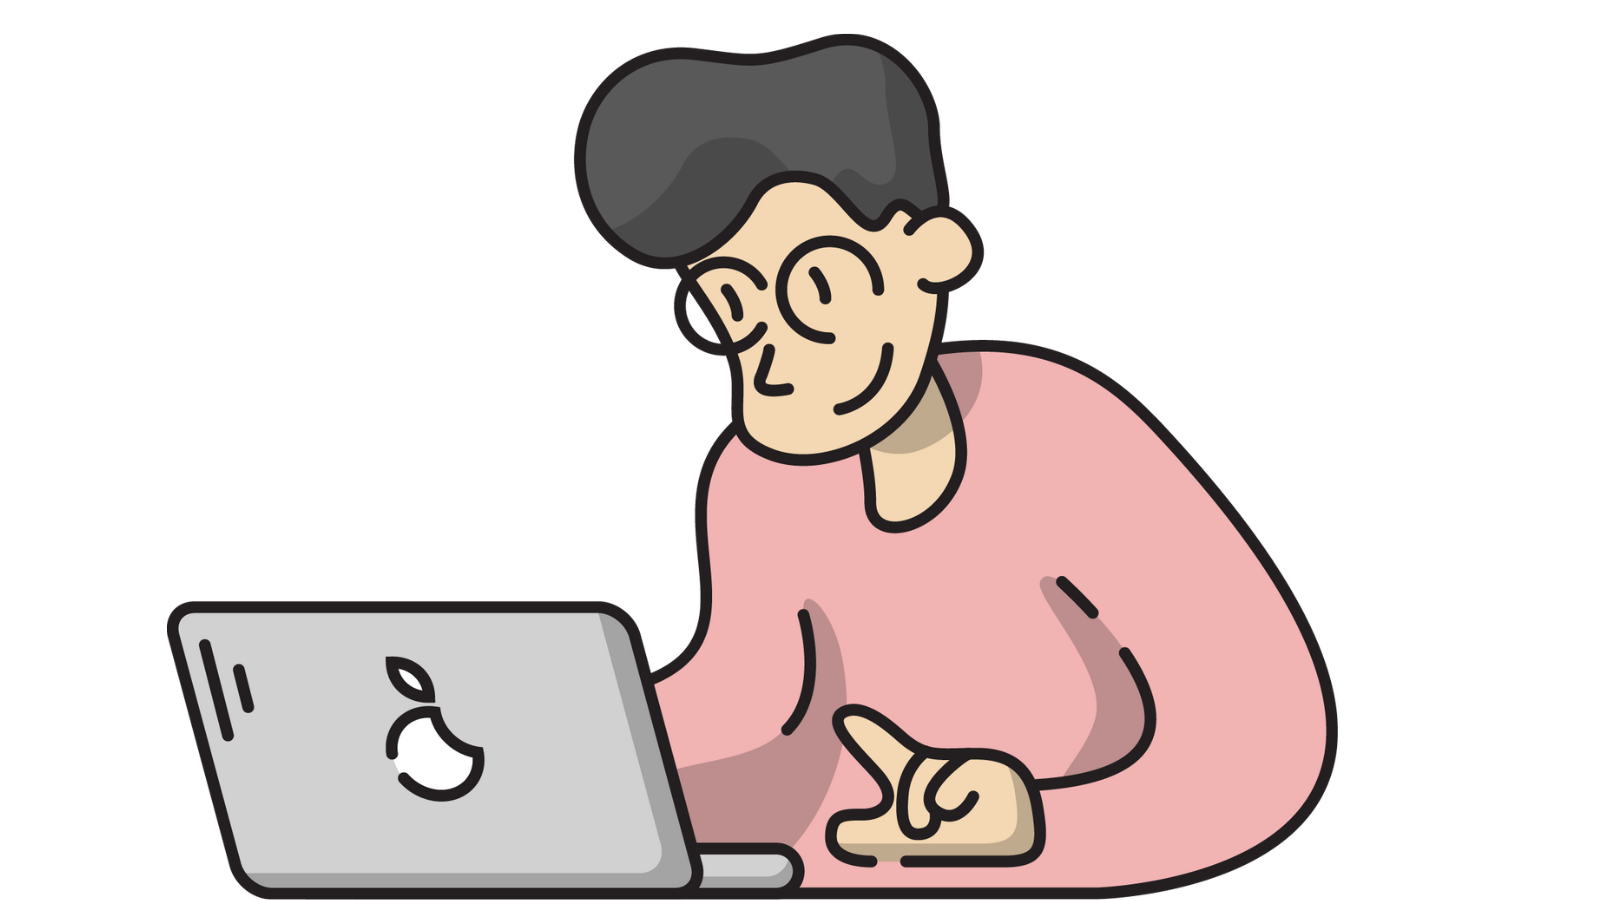 A person in nerd glasses using a Macbook